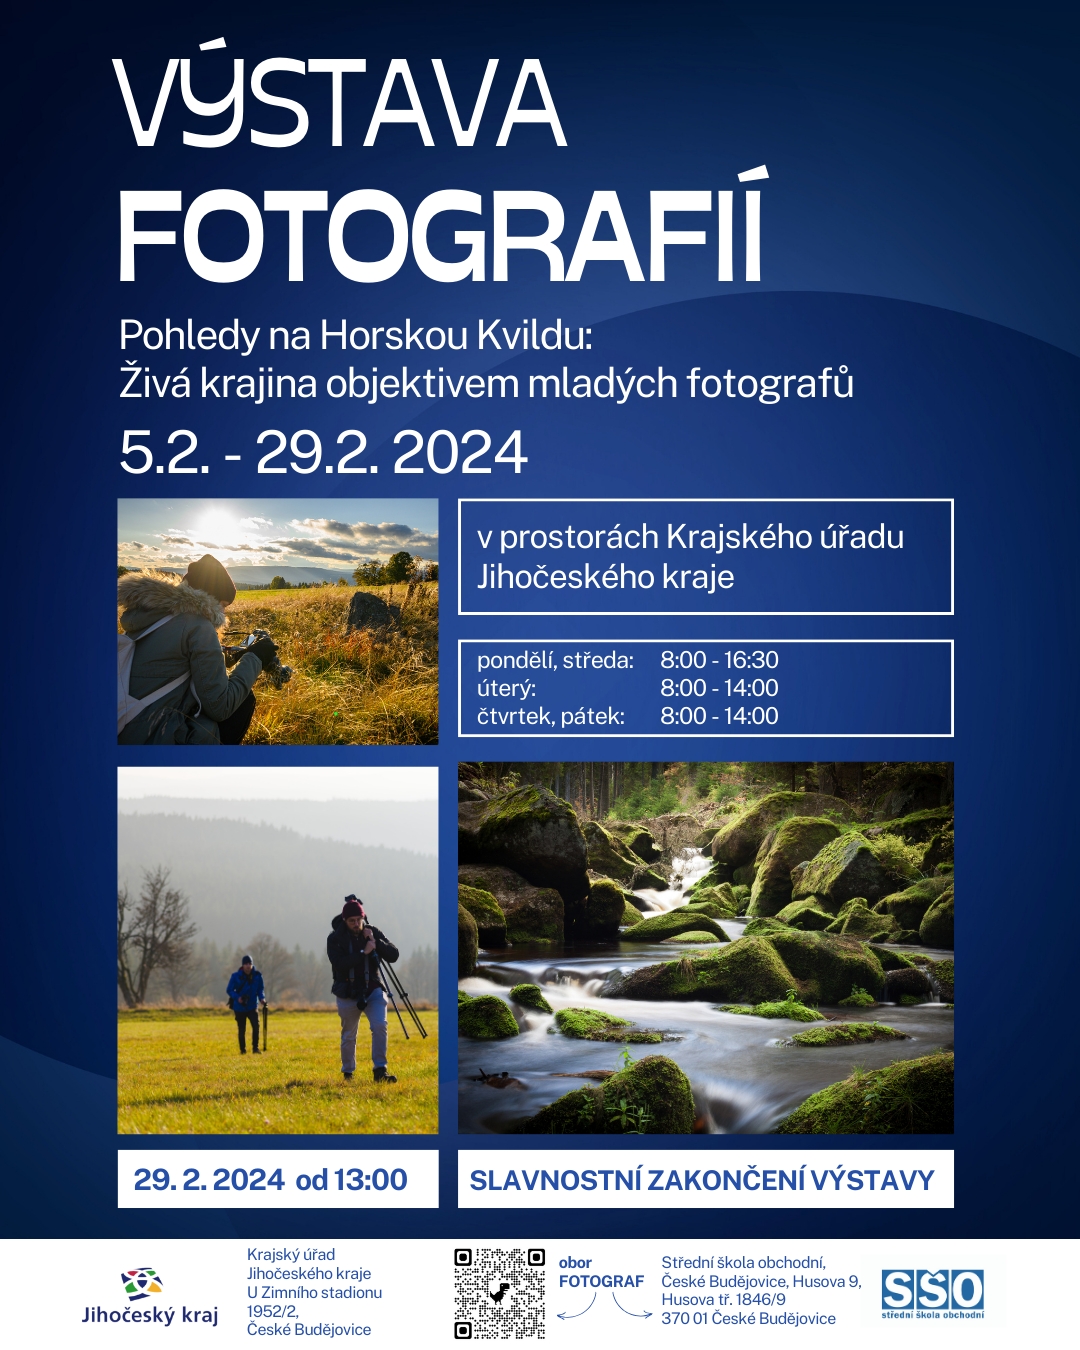 Pohledy na Horskou Kvildu: Živá krajina objektivem mladých fotografů